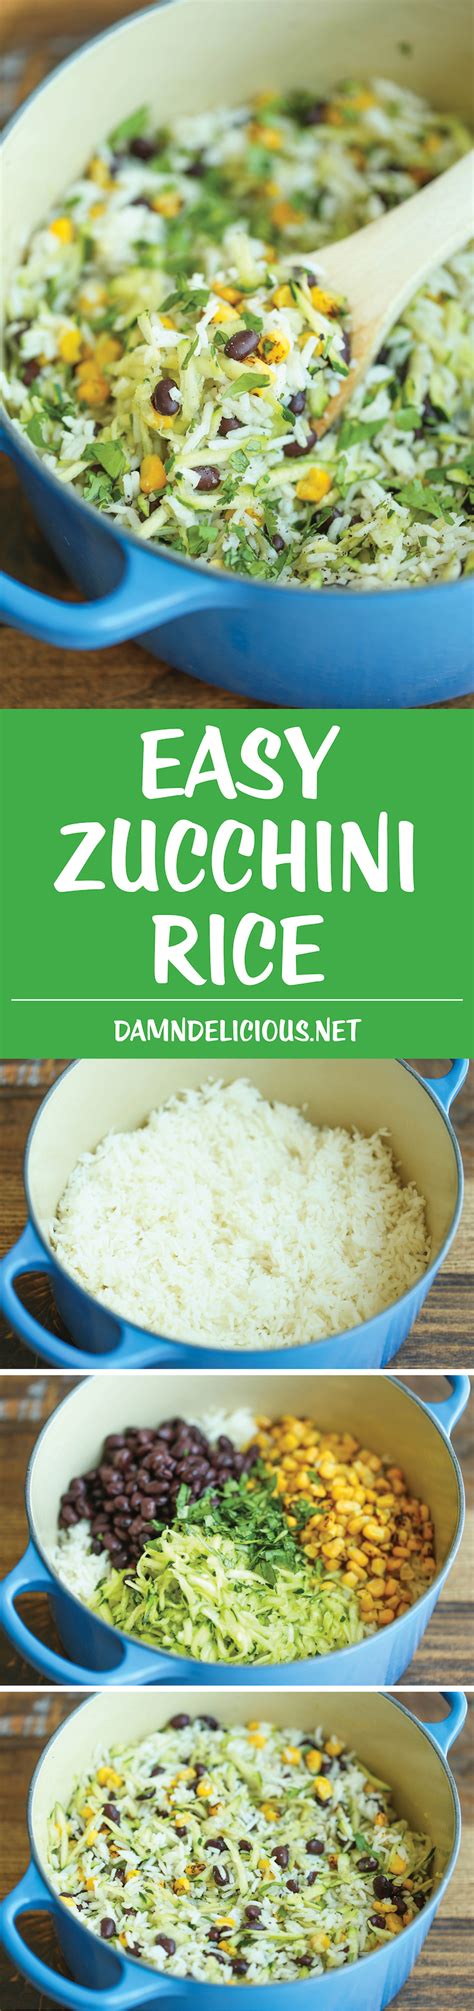 Zucchini Rice Damn Delicious